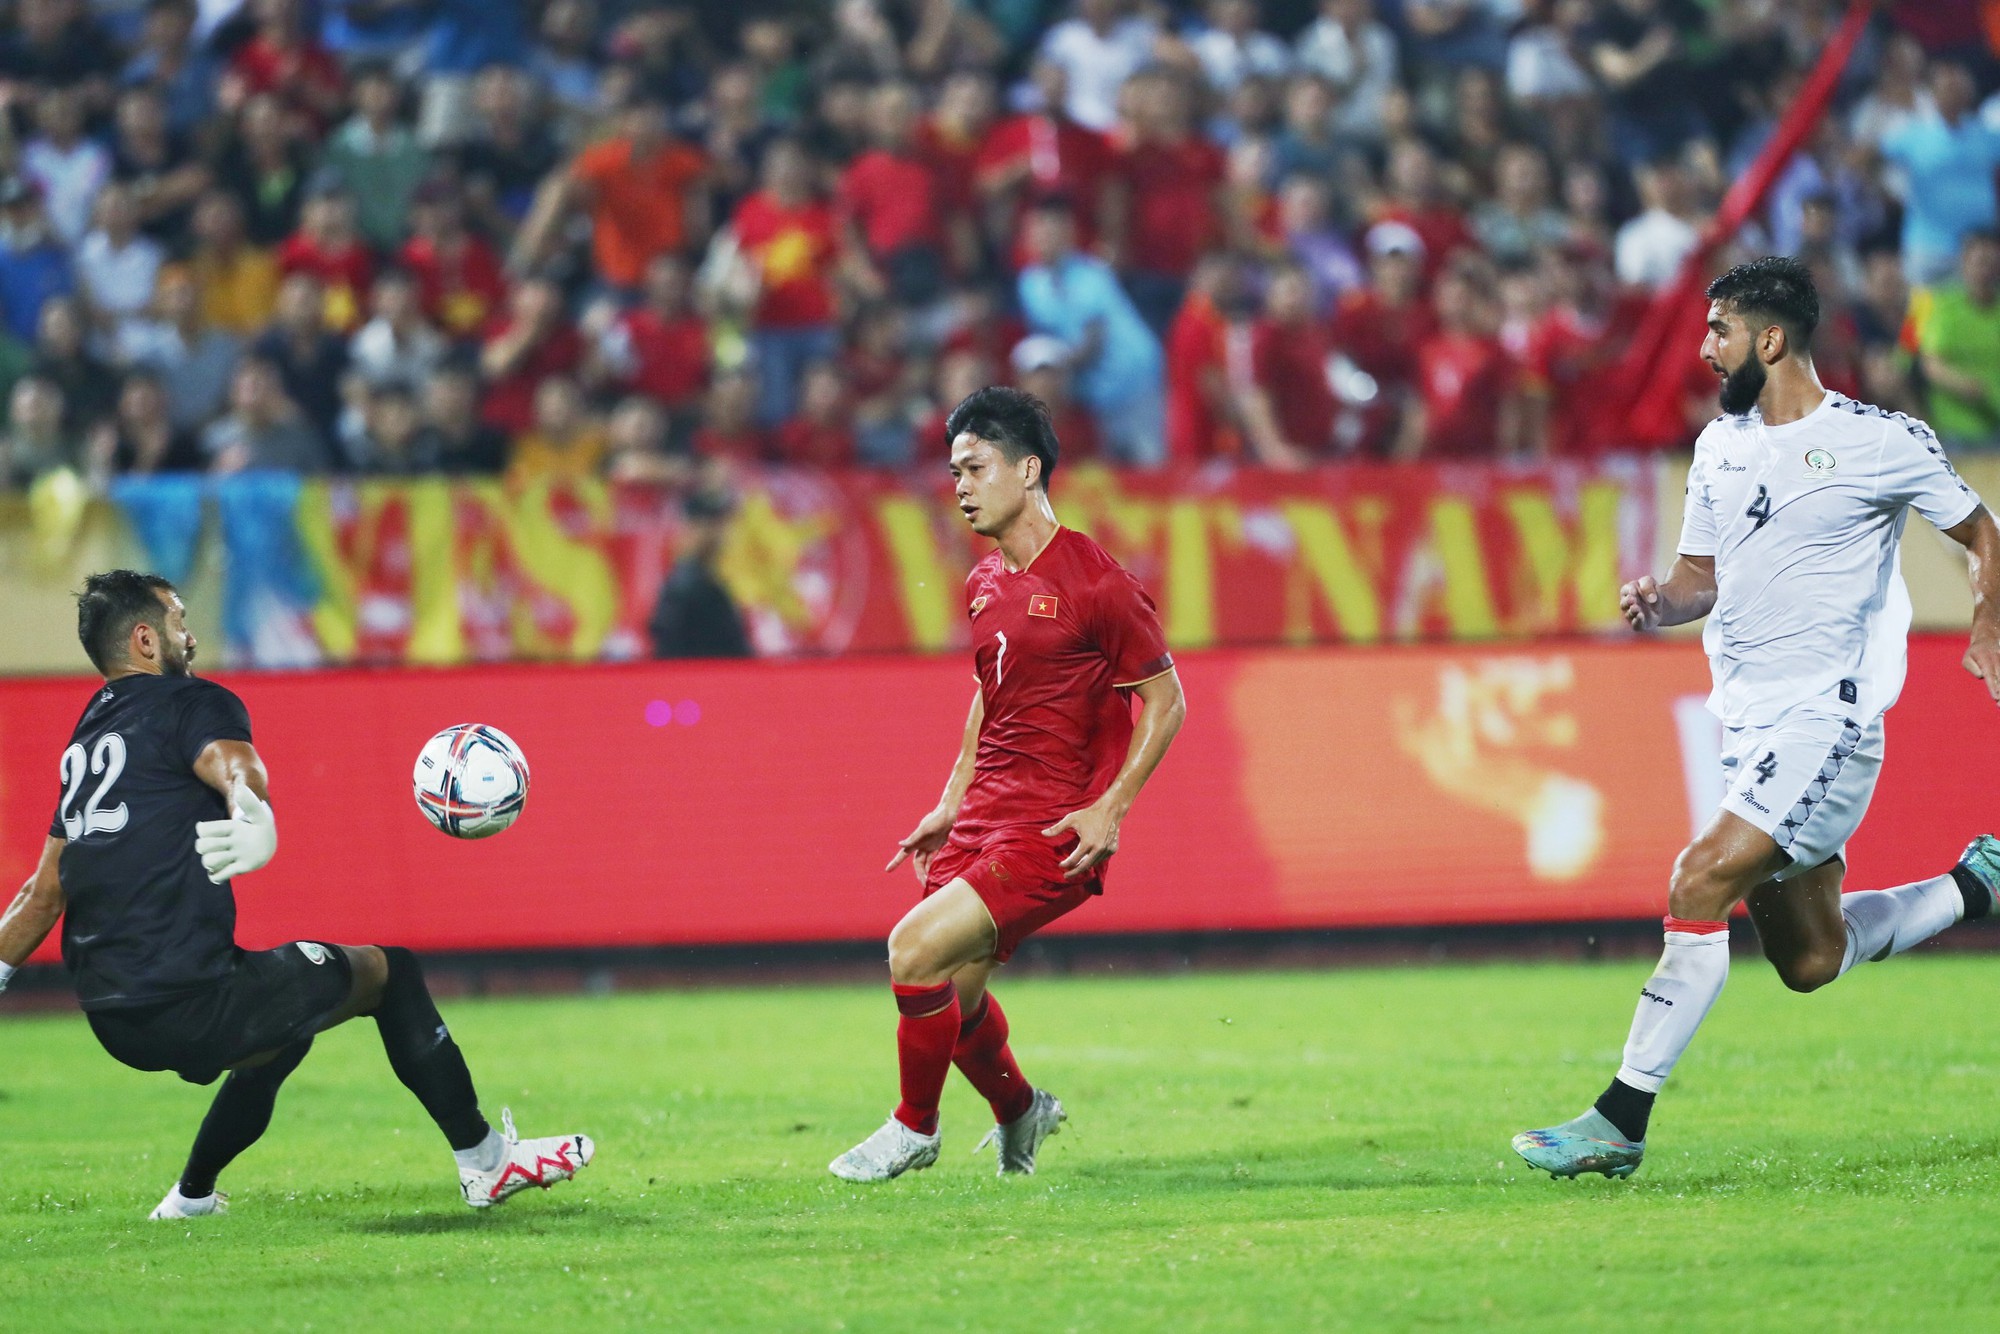 Ghi bàn đẳng cấp cho đội tuyển Việt Nam, cựu sao HAGL vẫn 'không hài lòng' - Ảnh 1.